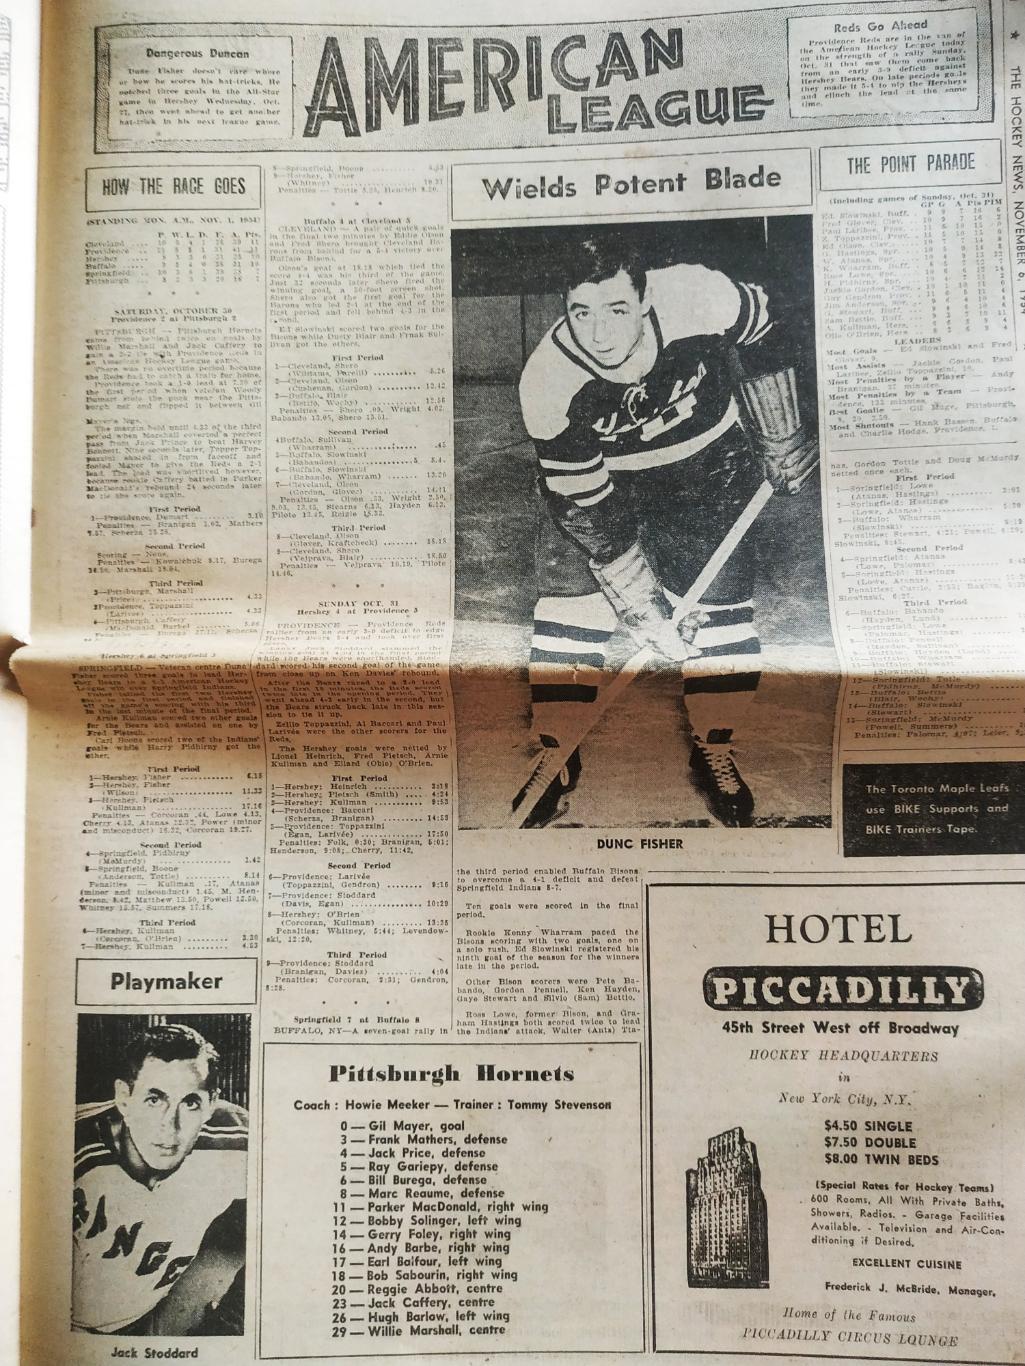 ХОККЕЙ ЖУРНАЛ ЕЖЕНЕДЕЛЬНИК НХЛ НОВОСТИ ХОККЕЯ NOV.6 1954 NHL THE HOCKEY NEWS 4